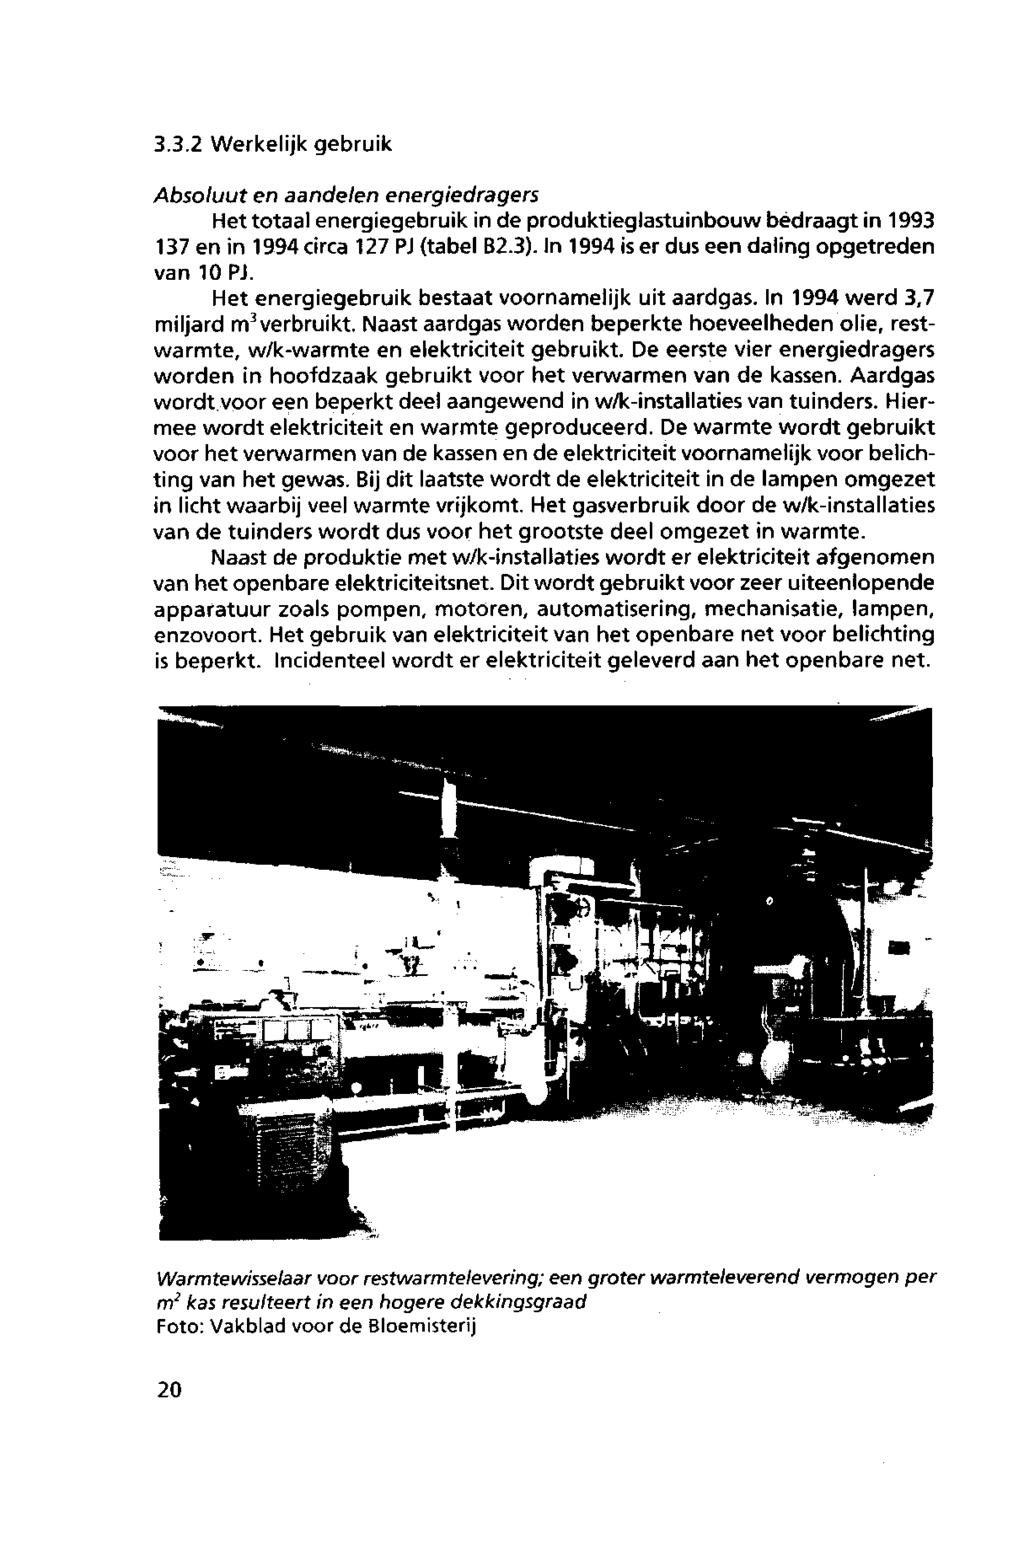 3.3.2 Werkelijk gebruik Absluut en aandelen energiedragers Het ttaal energiegebruik in de prduktieglastuinbuw bedraagt in 1993 137 en in 1994circa 127PJ (tabel B2.3).